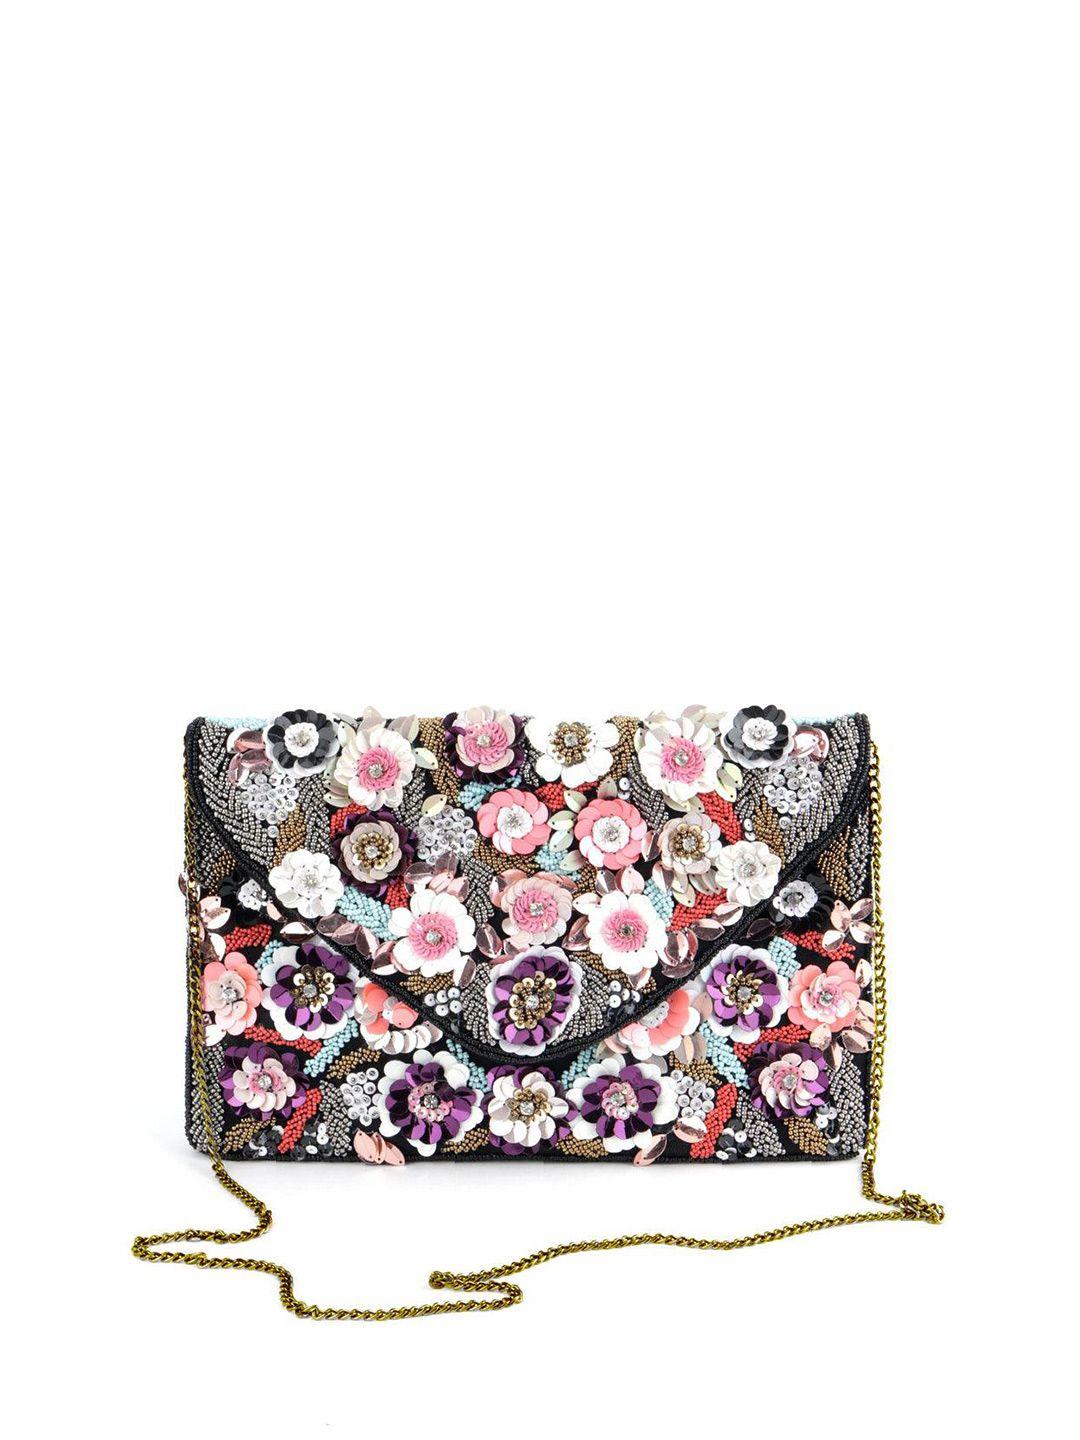 odette floral embellished purse clutch